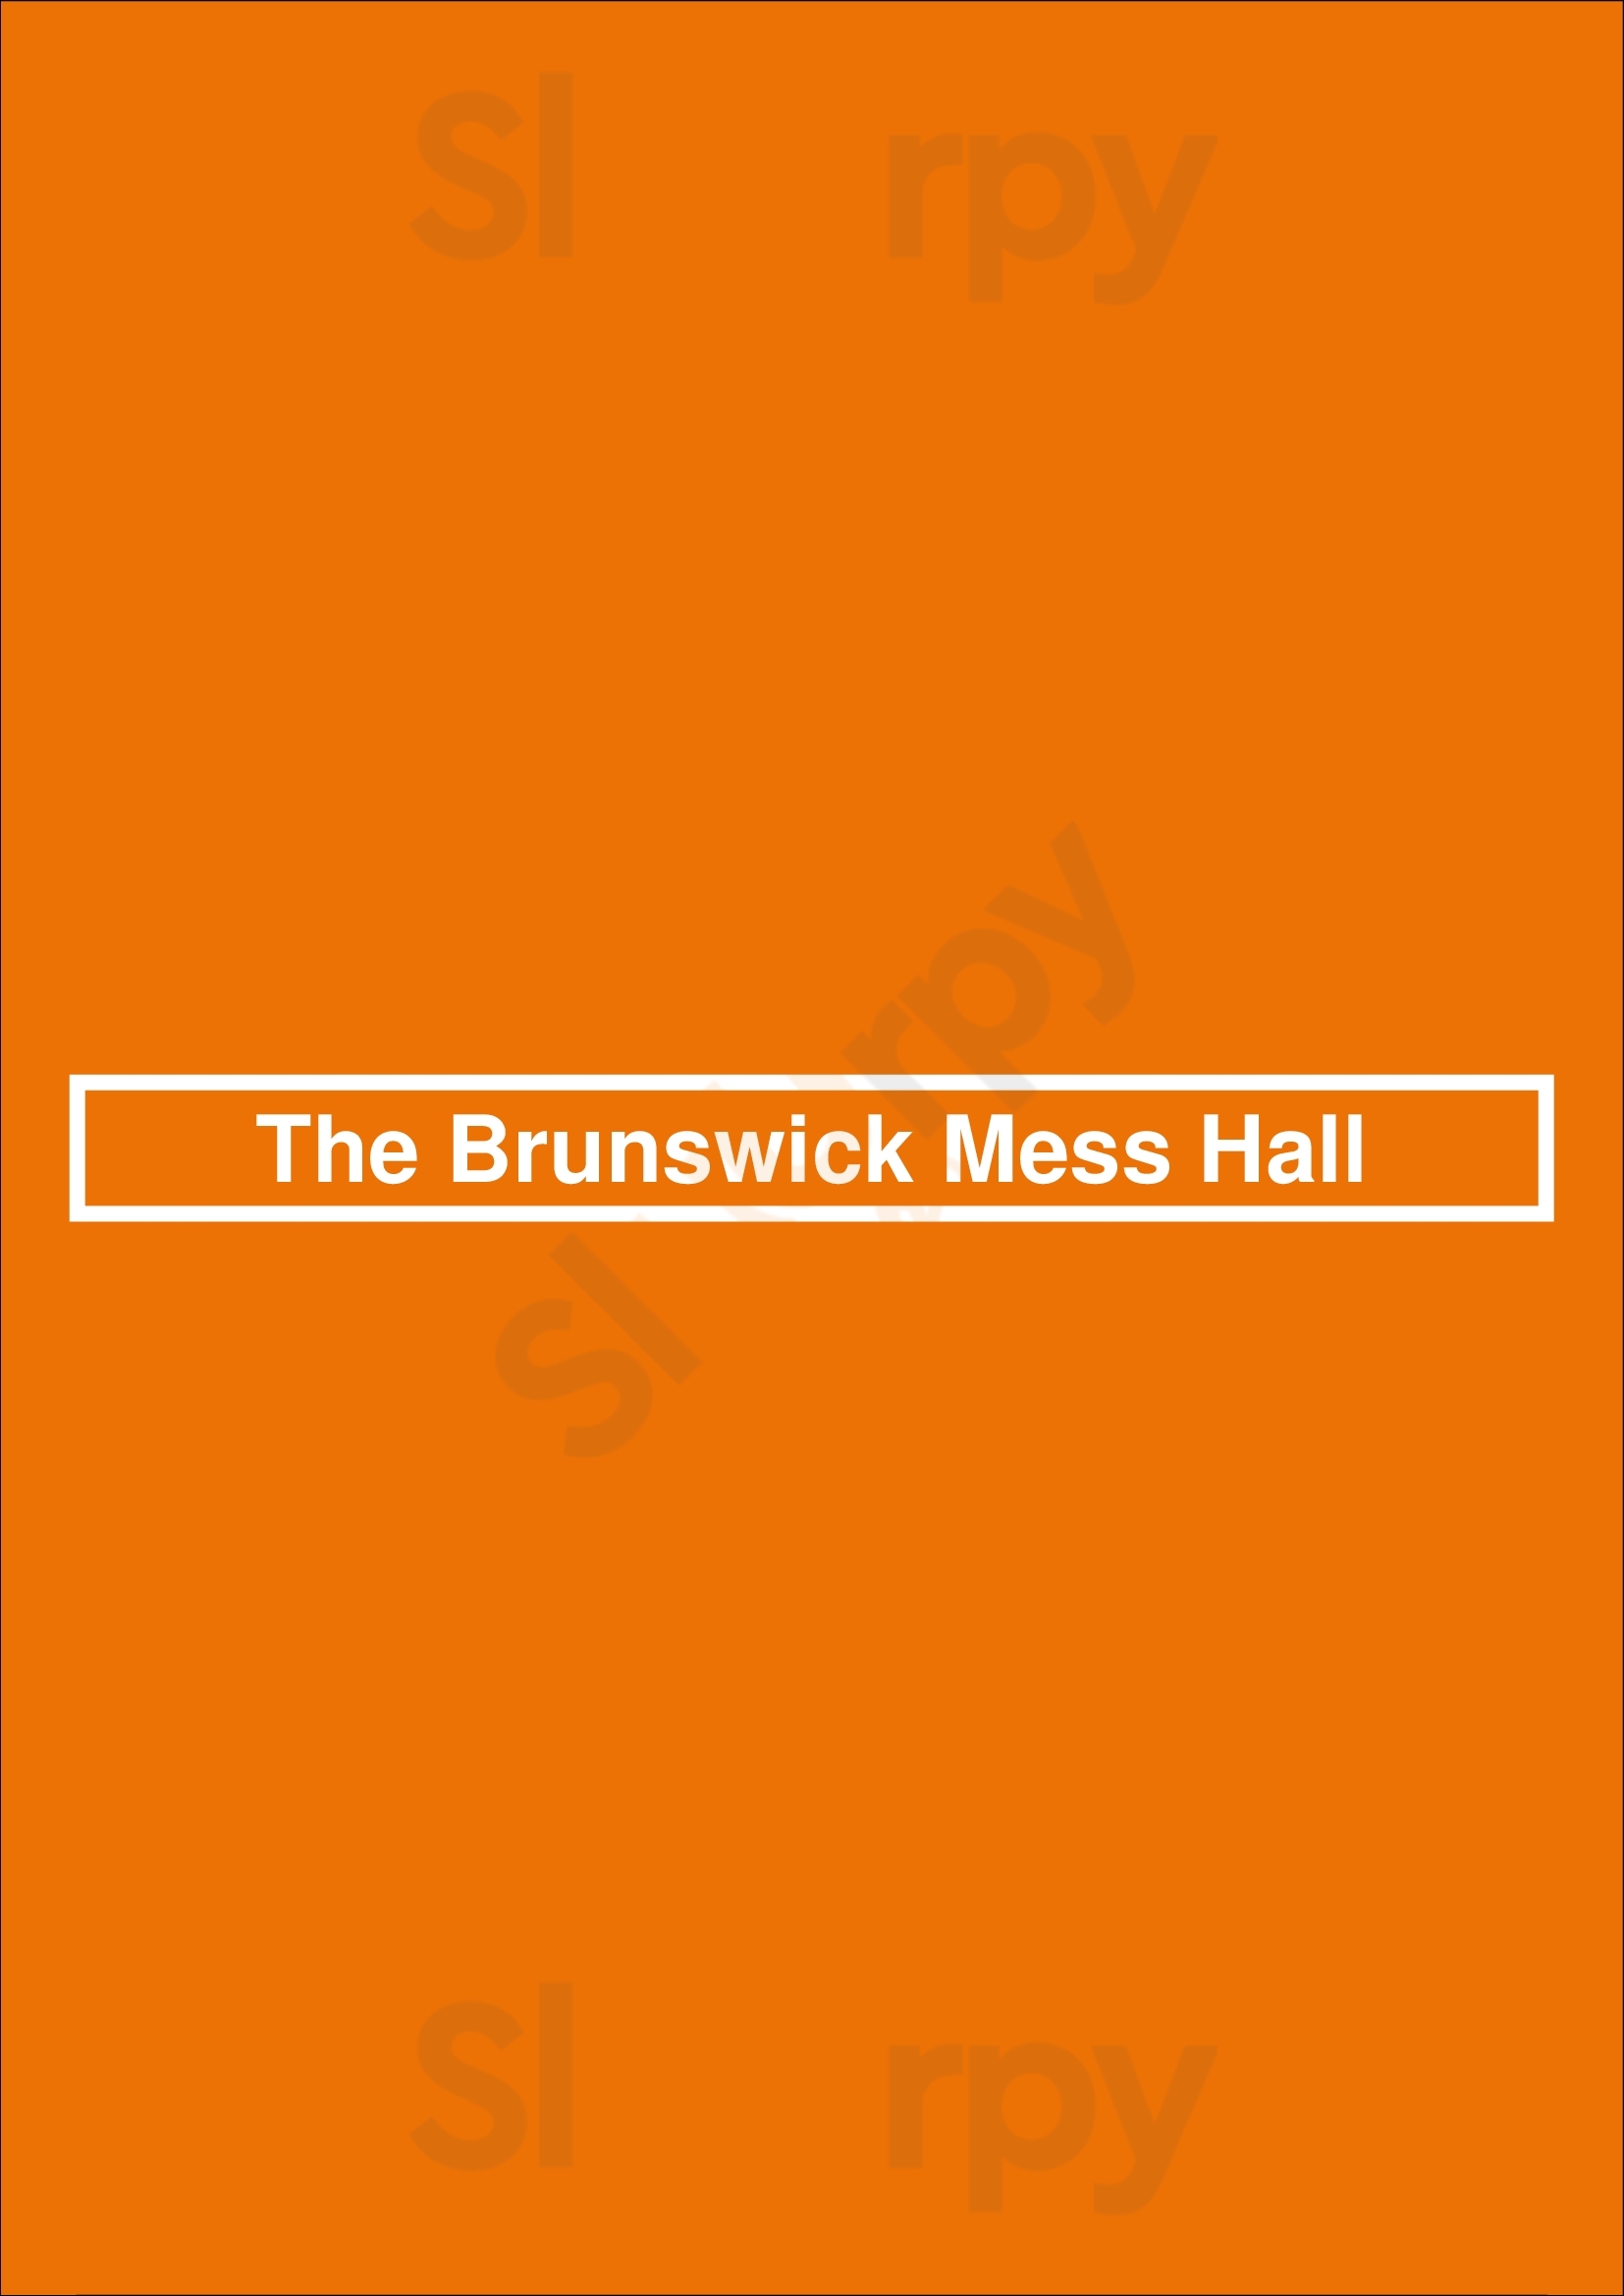 The Brunswick Mess Hall Brunswick Menu - 1